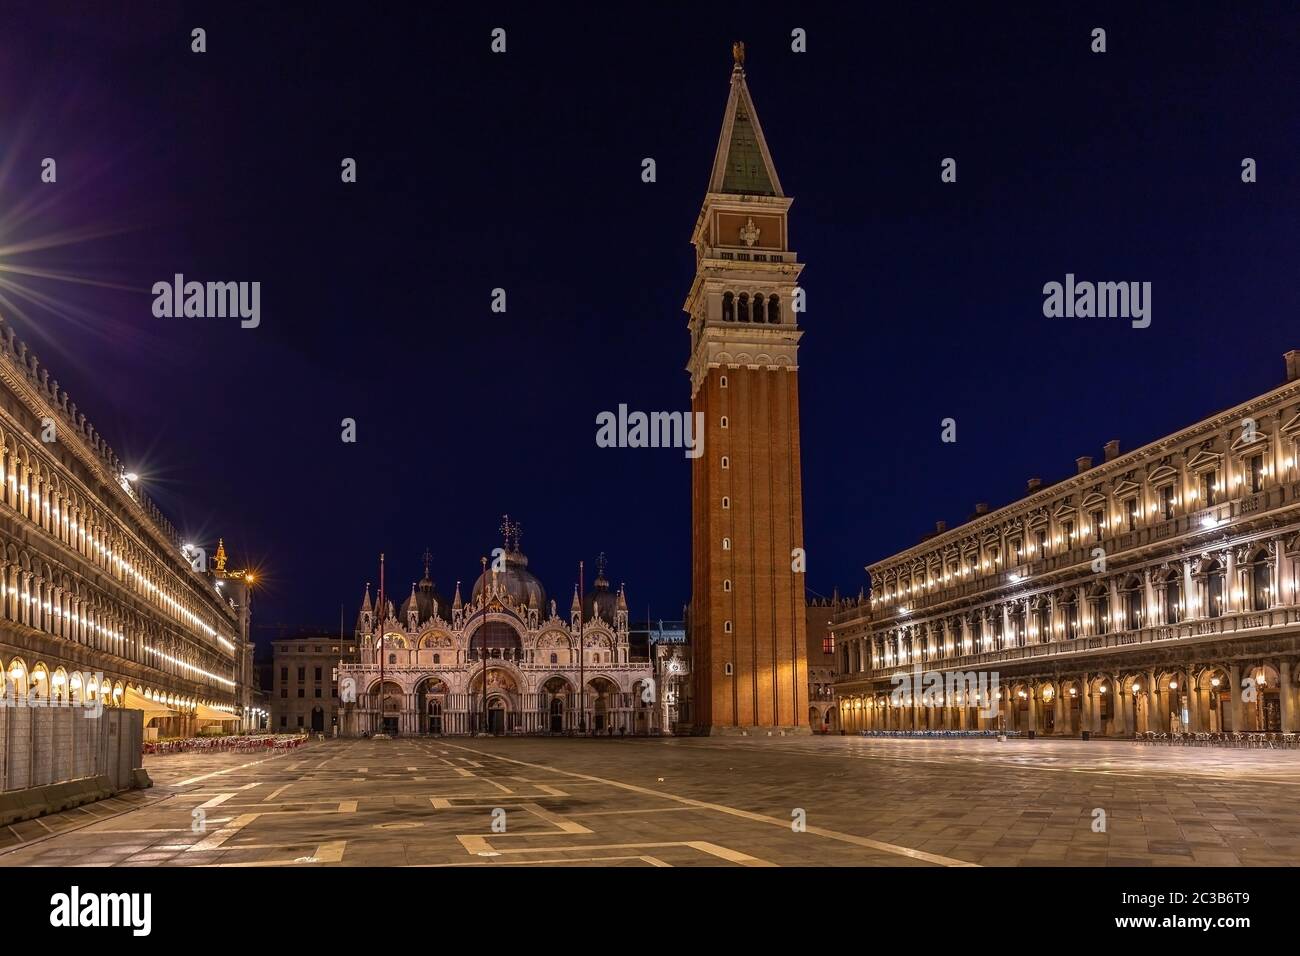 Plaza de San MarkÂ en Venecia por la noche Foto de stock